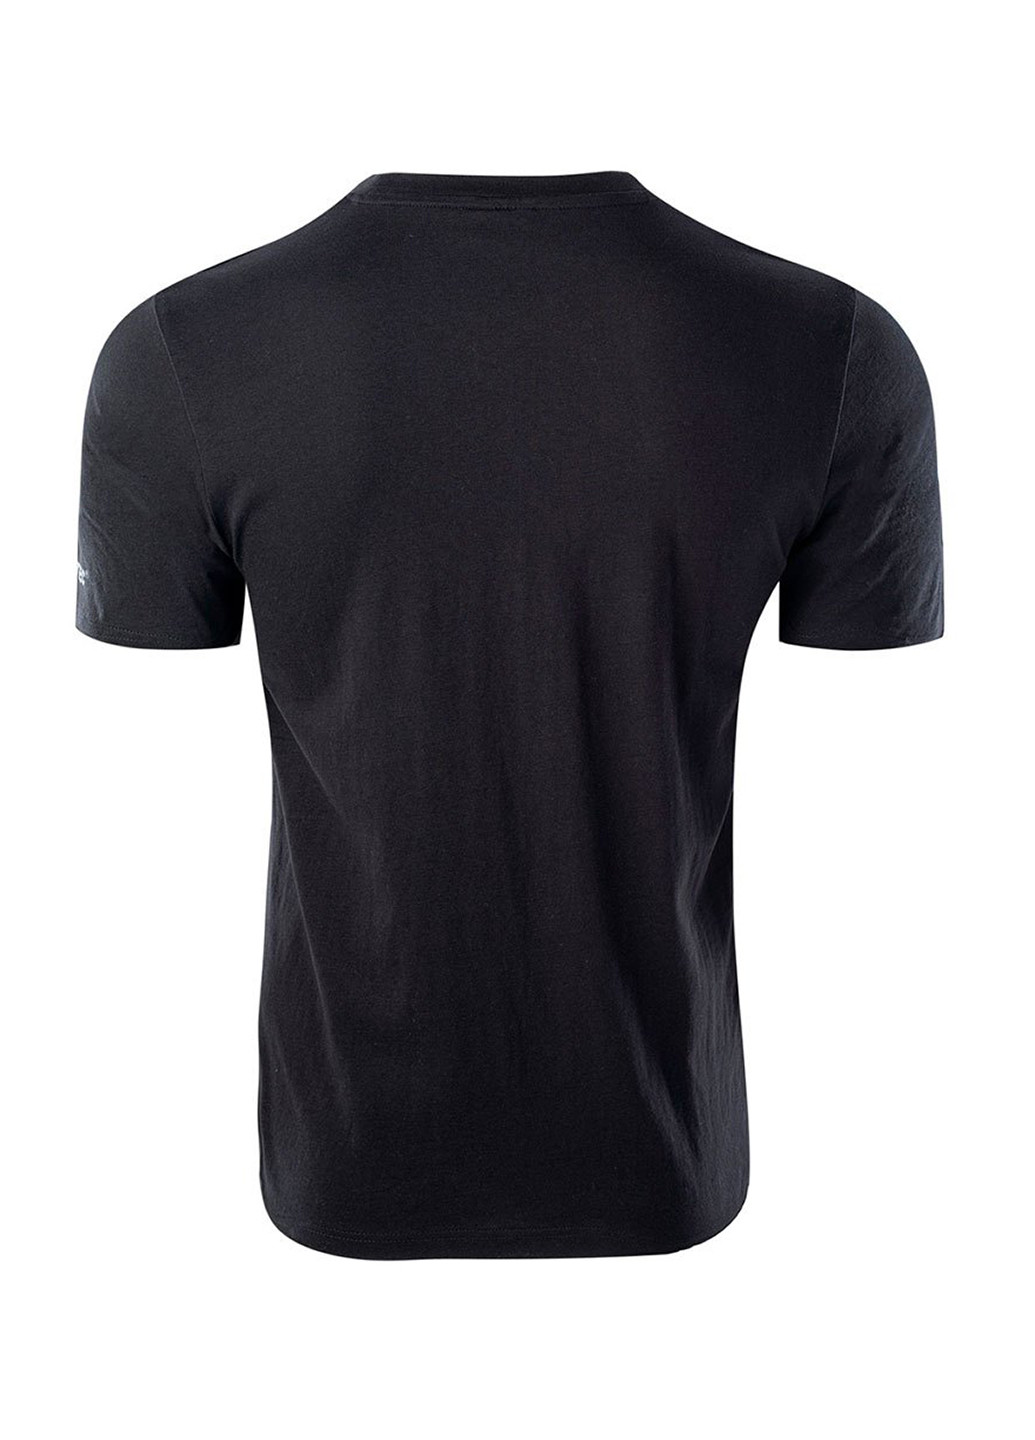 Черная футболка мужская thero Hi-Tec